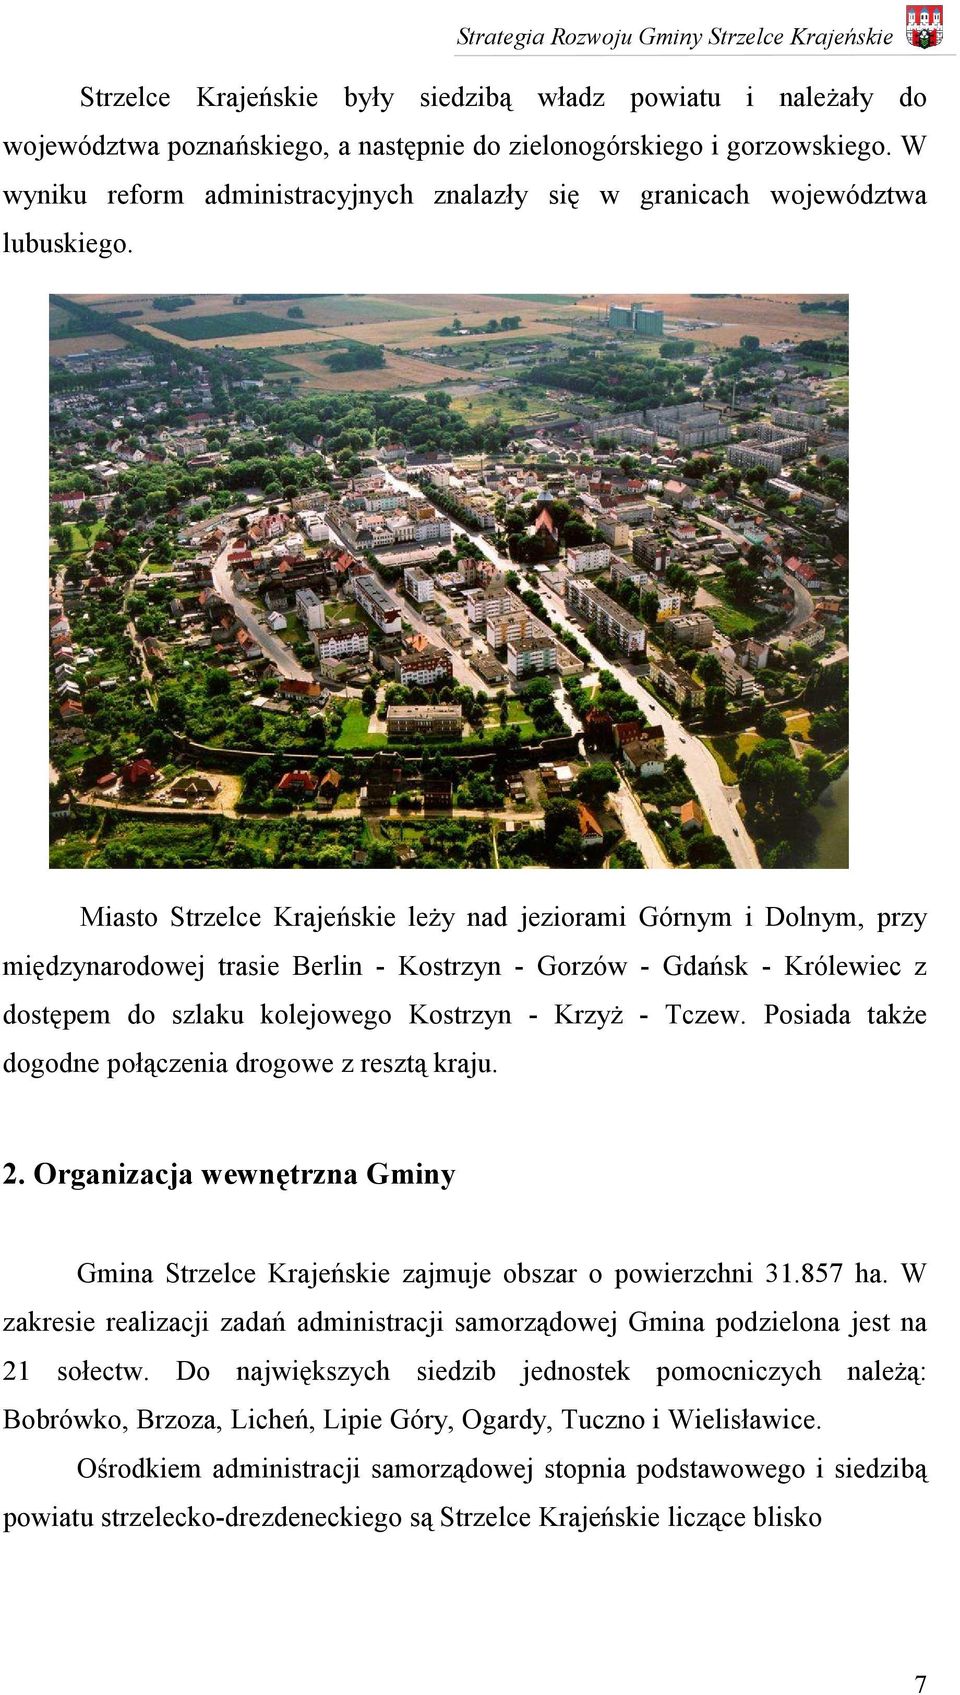 Miasto Strzelce Krajeńskie leży nad jeziorami Górnym i Dolnym, przy międzynarodowej trasie Berlin - Kostrzyn - Gorzów - Gdańsk - Królewiec z dostępem do szlaku kolejowego Kostrzyn - Krzyż - Tczew.